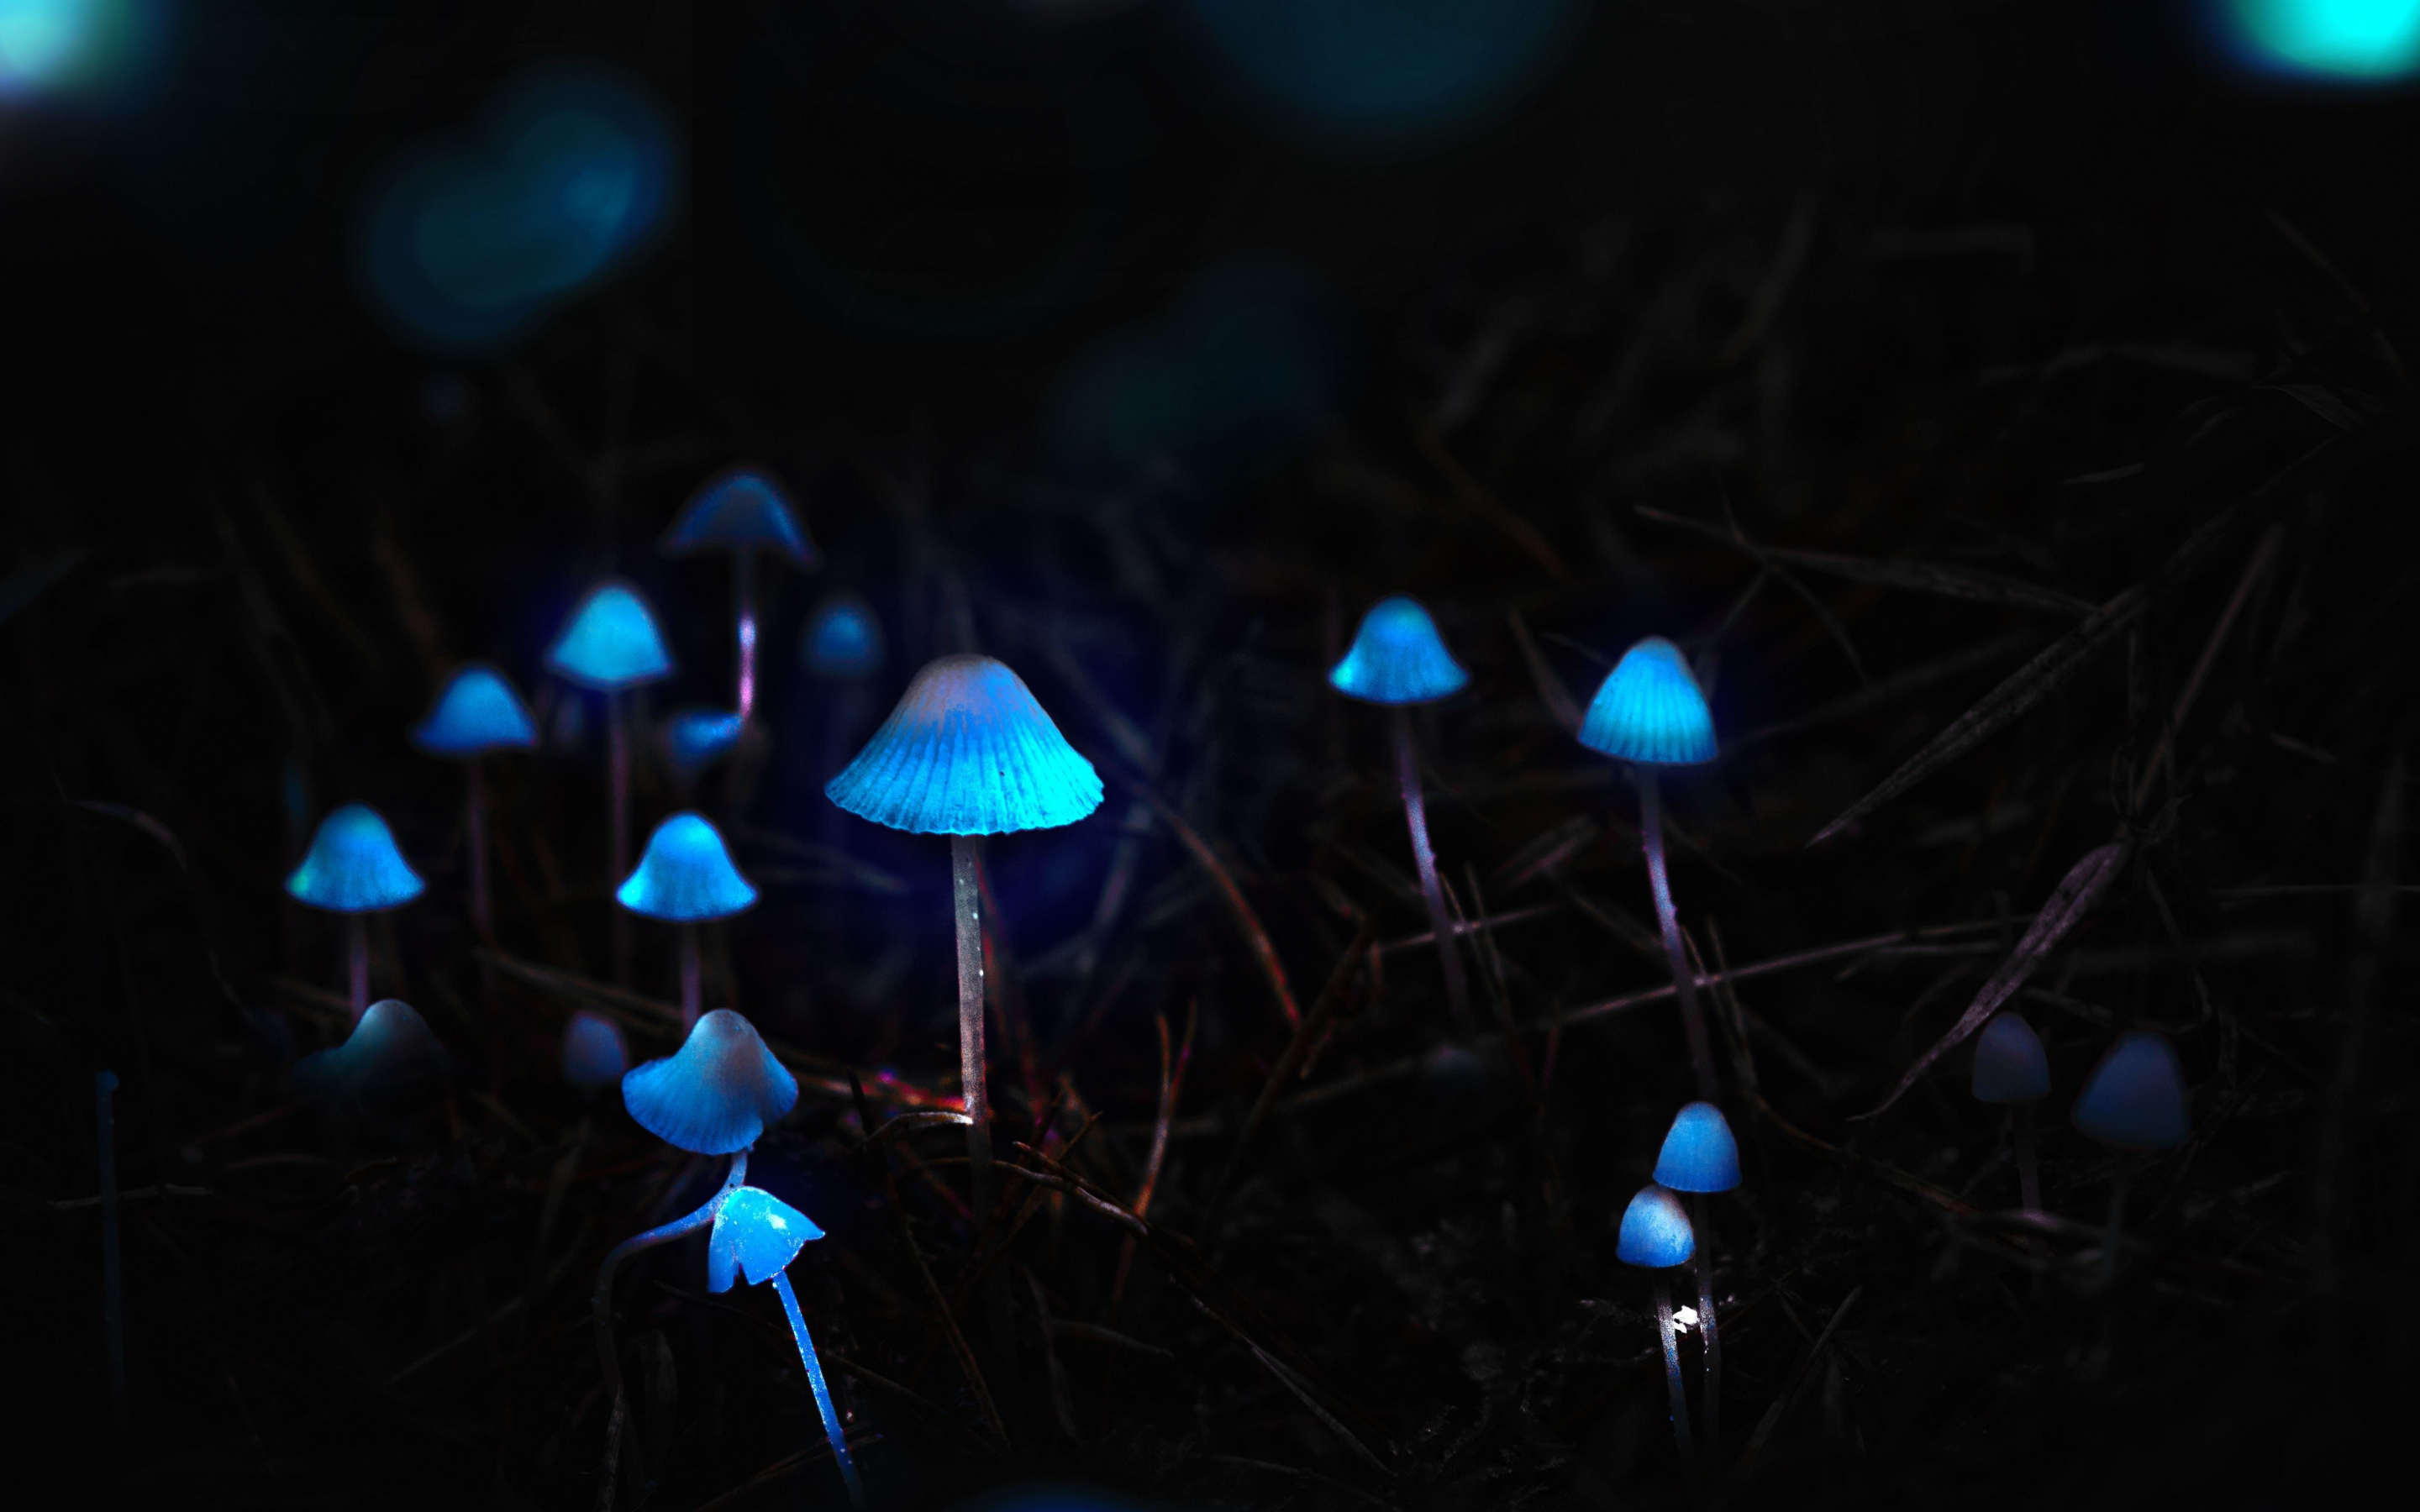 Mushrooms, toadstools, portrait, blue glow, 2880x1800 wallpaper